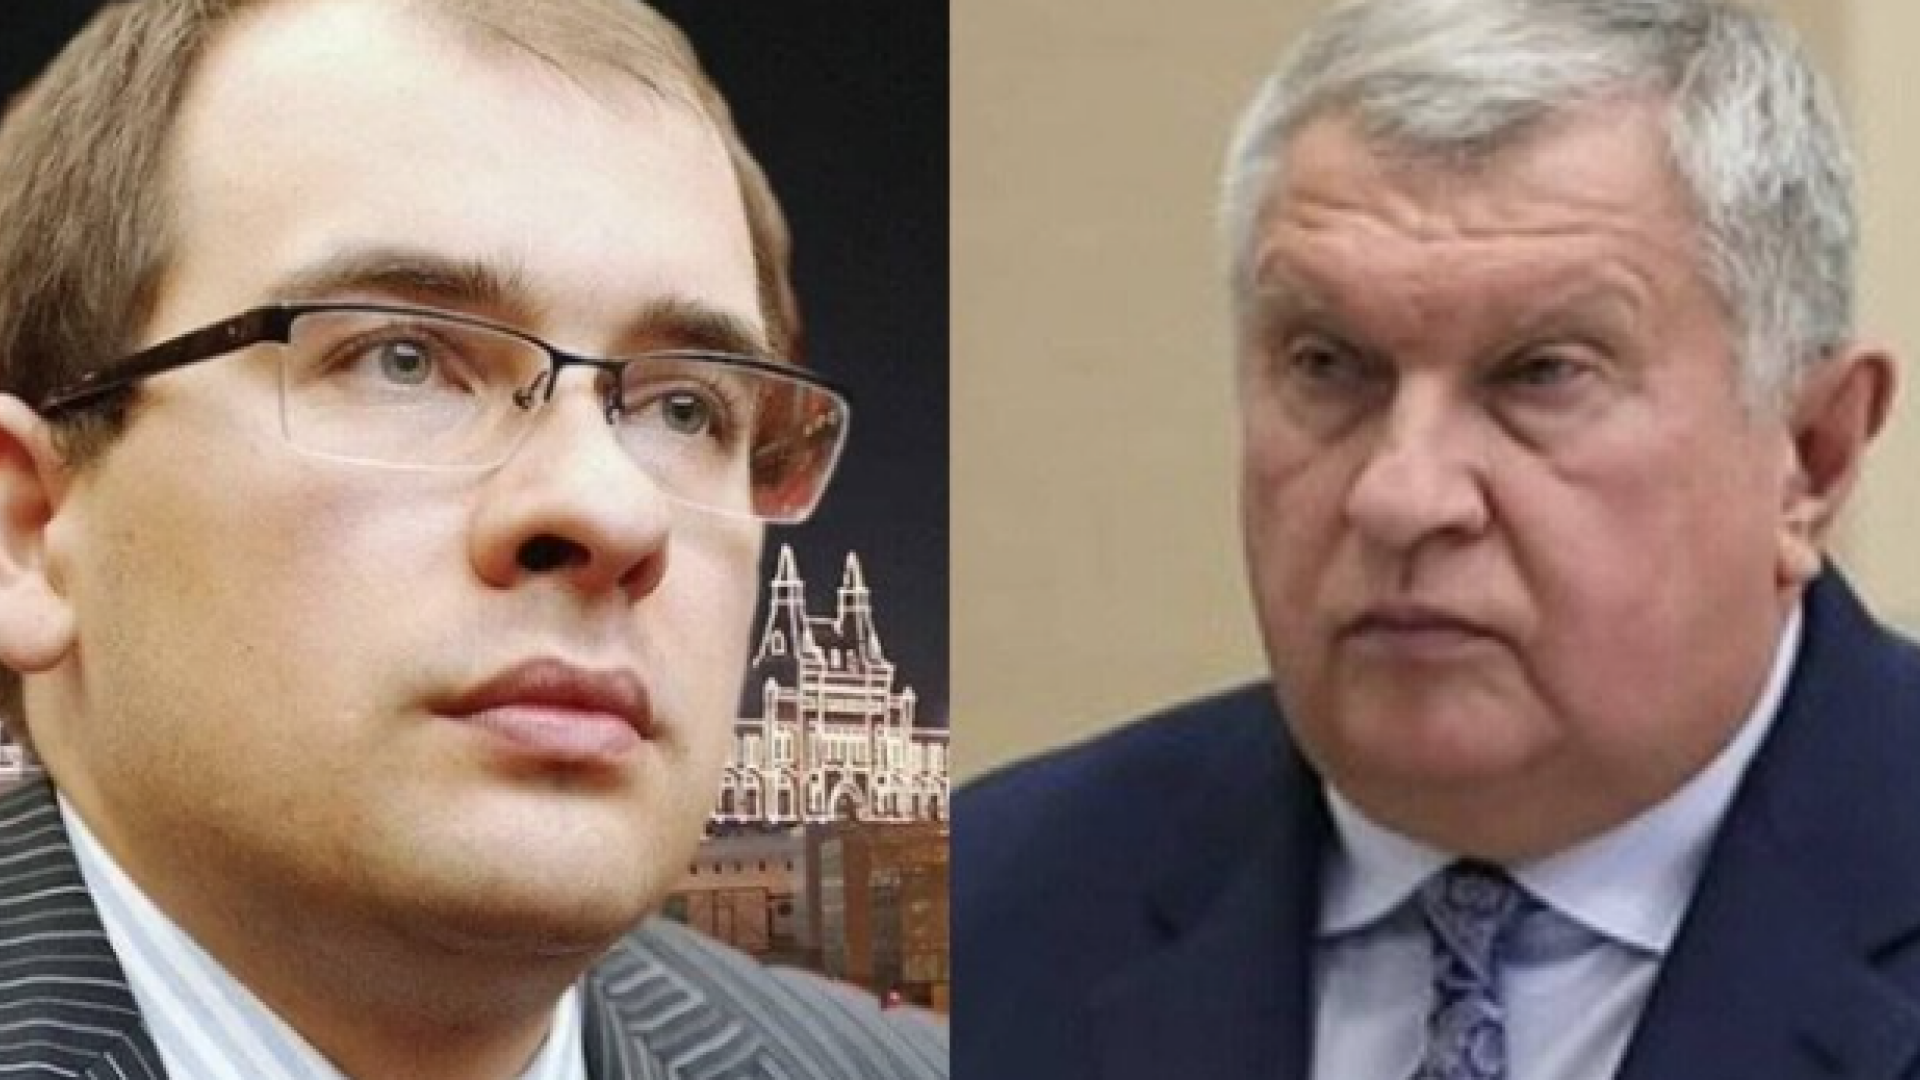 Ivan Secin, fiul şefului Rosneft, mort în circumstanţe „ciudate”, la numai 35 de ani. Fusese decorat de Kremlin la 26 de ani